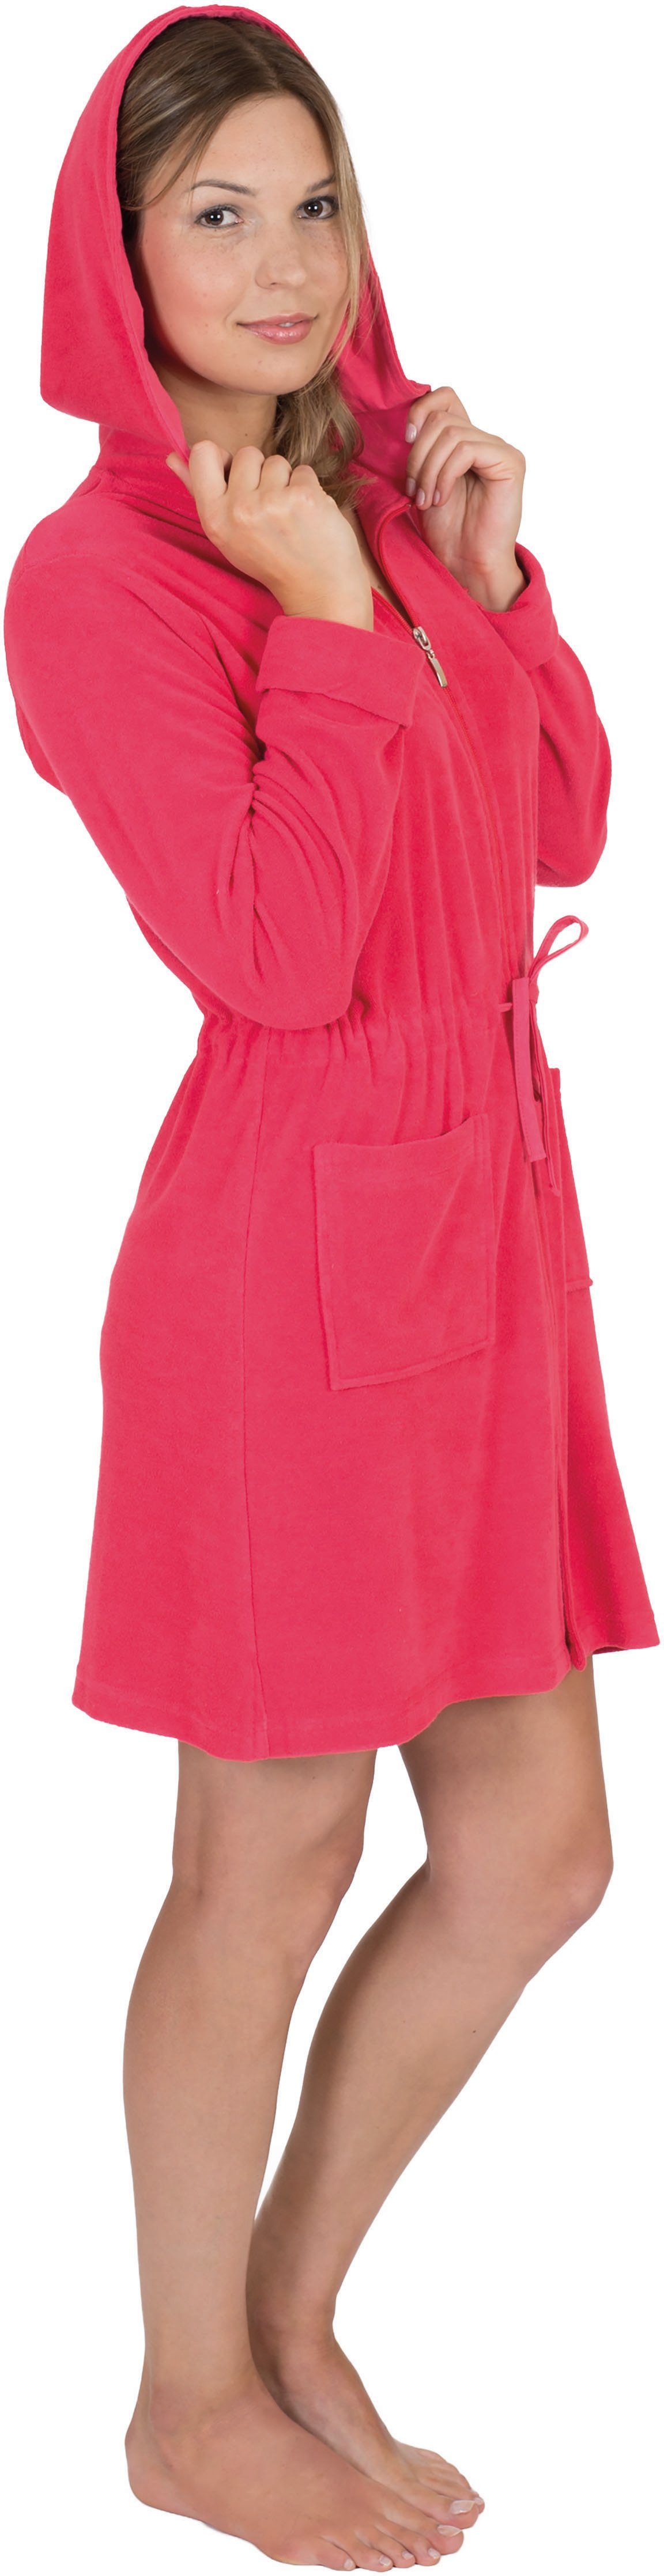 Leichtfrottee, Damenbademantel fashion zum Wewo Binden, erdbeere Kurzform, kurz 031, Tunnelzug Kapuze, Reißverschluss, &